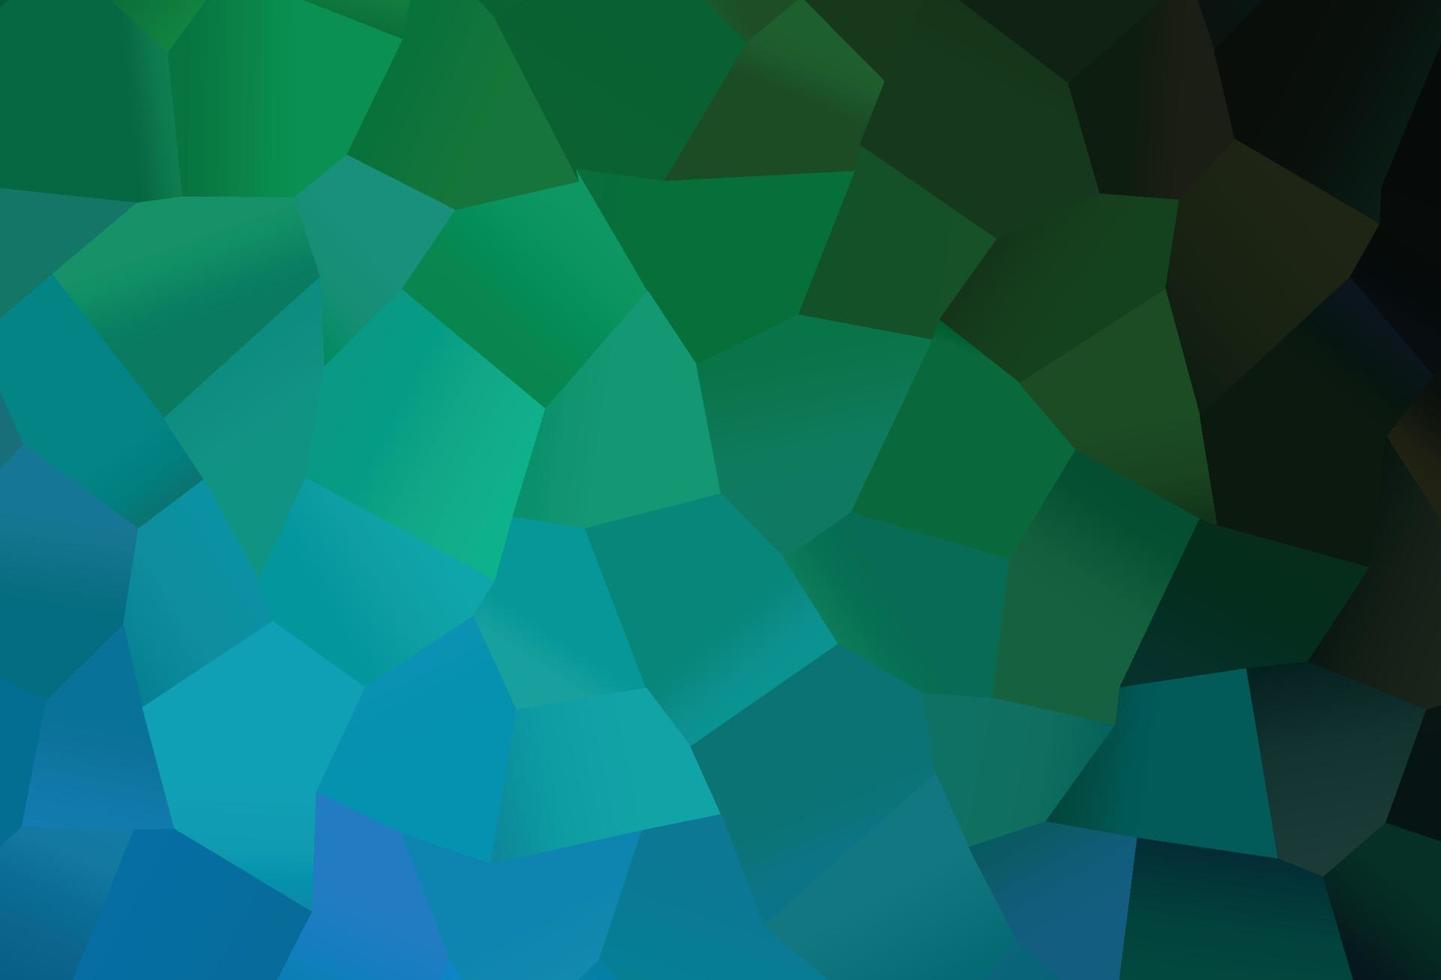 padrão de vetor azul escuro, verde com hexágonos coloridos.